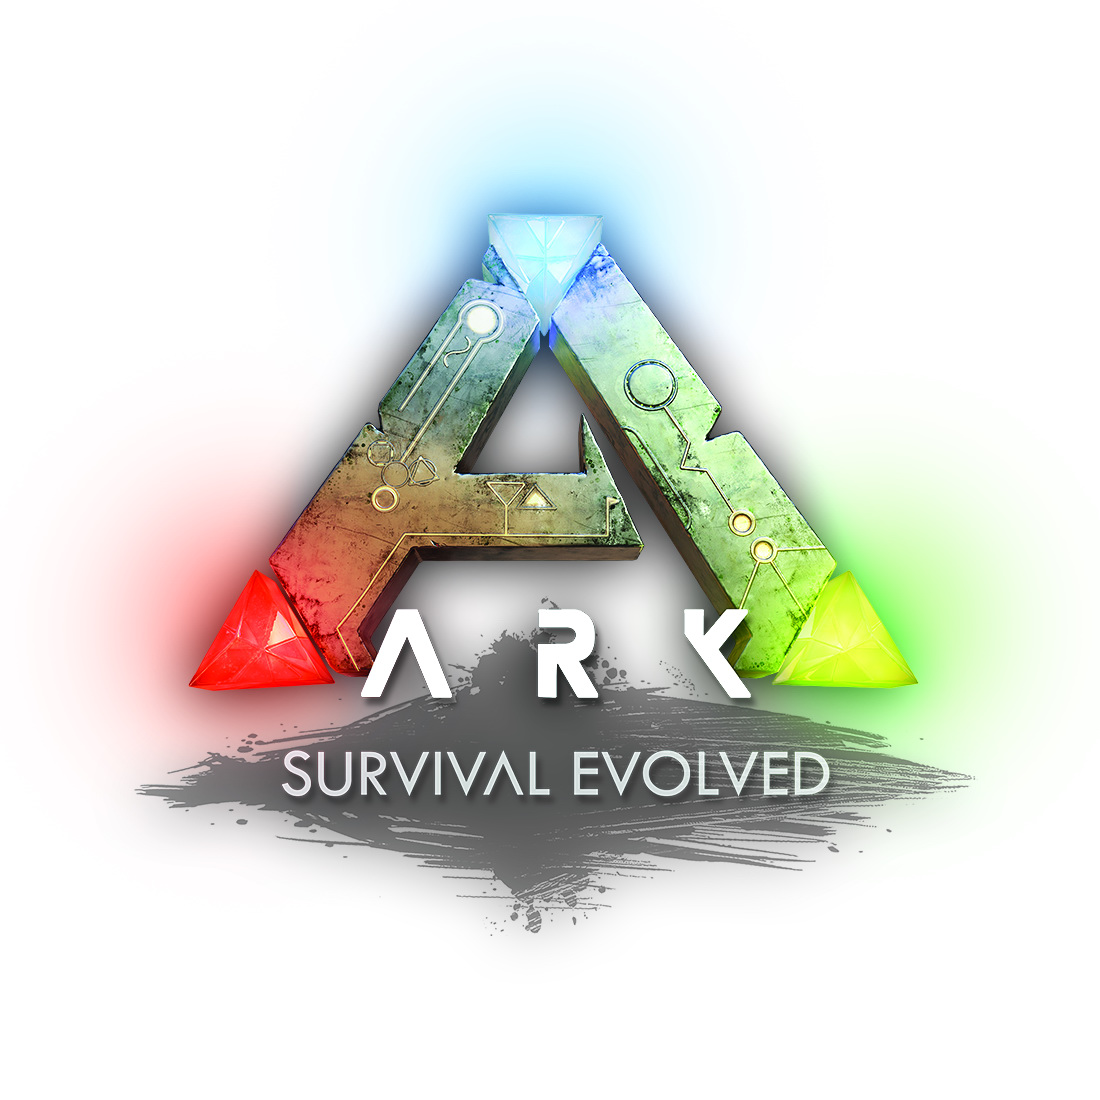 方舟 生存進化 Ps4 亞洲版今日上市第1 波dlc 焦土地球 同步開放下載 Ark Survival Evolved 巴哈姆特